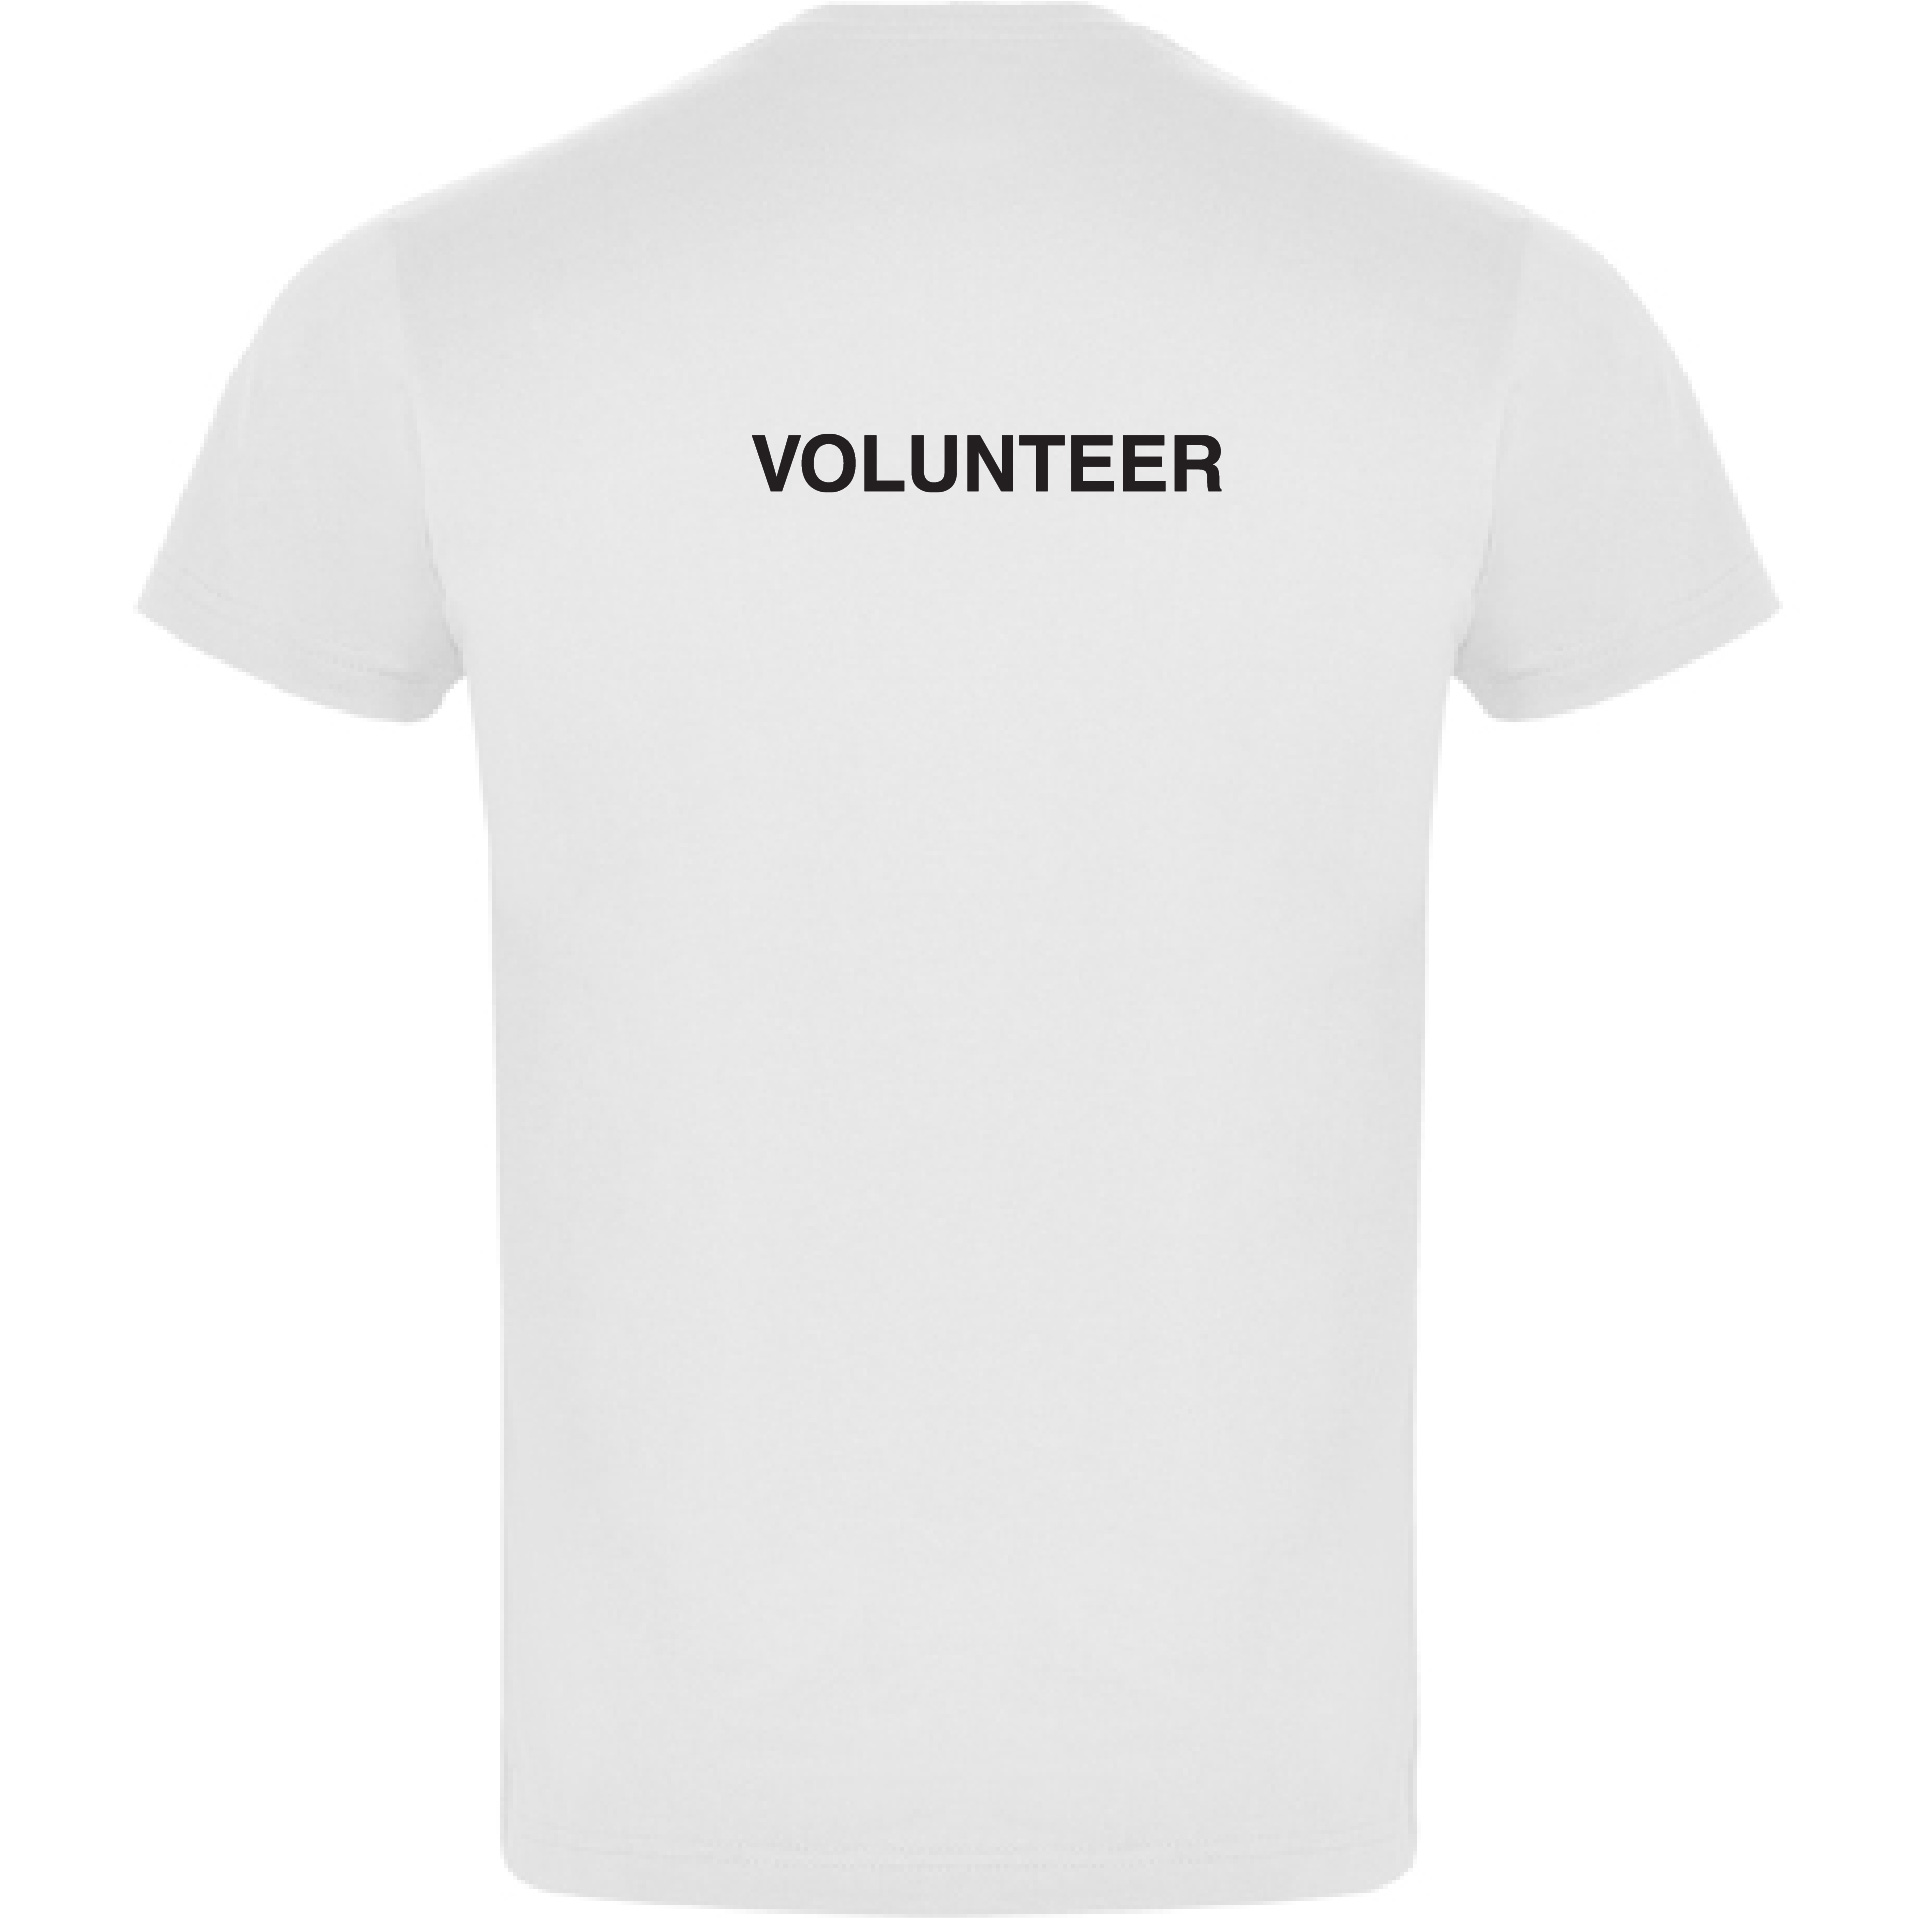 638017877640025404_t-shirt_volunteer_back_white.jpg